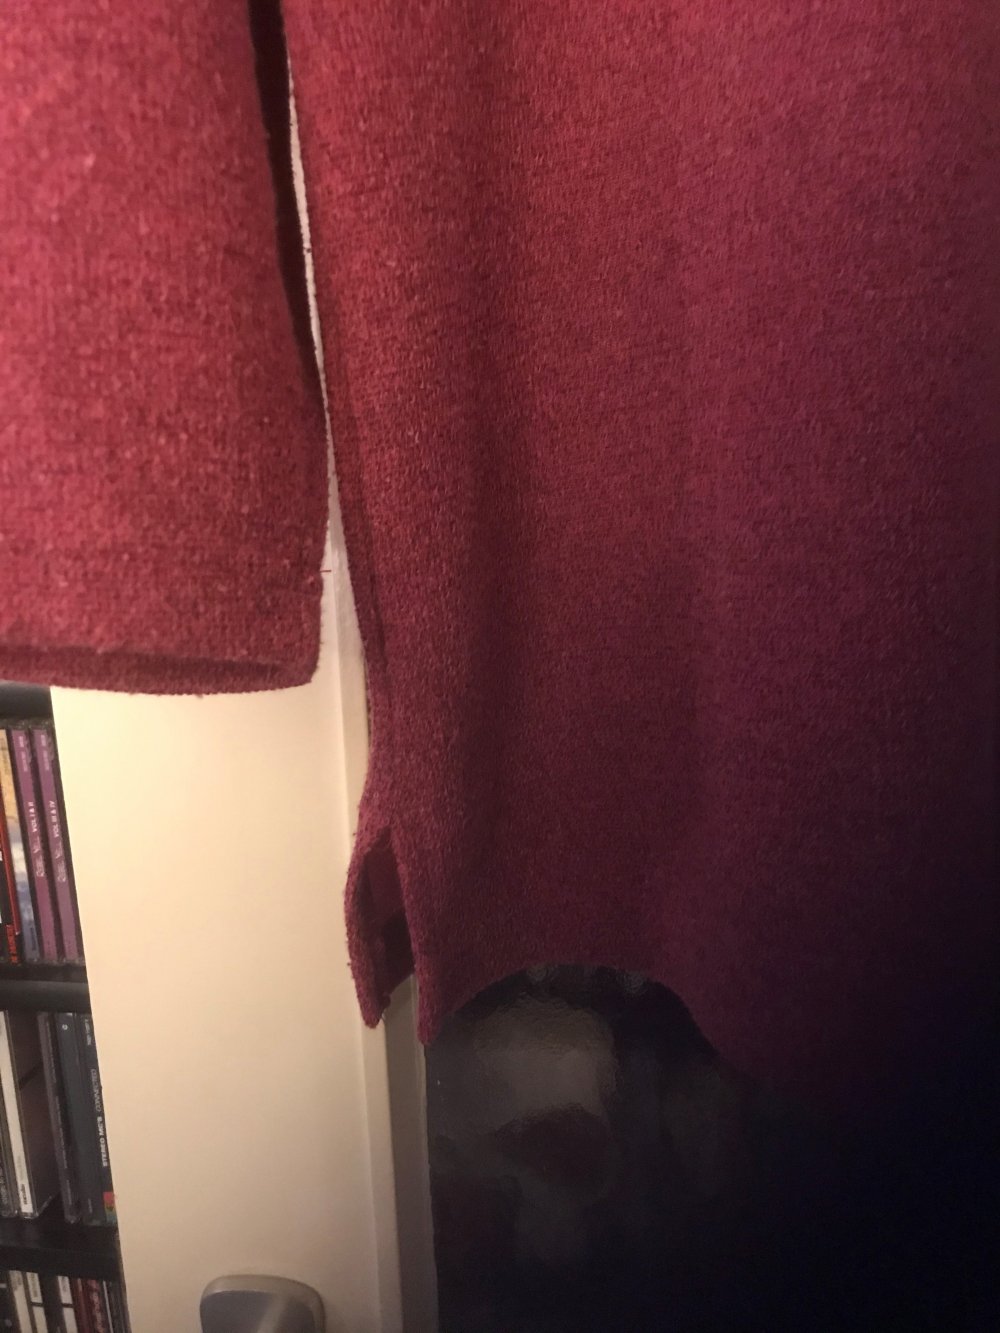 Pullover dunkelrosa/himbeerfarben Größe 48 – selten getragen